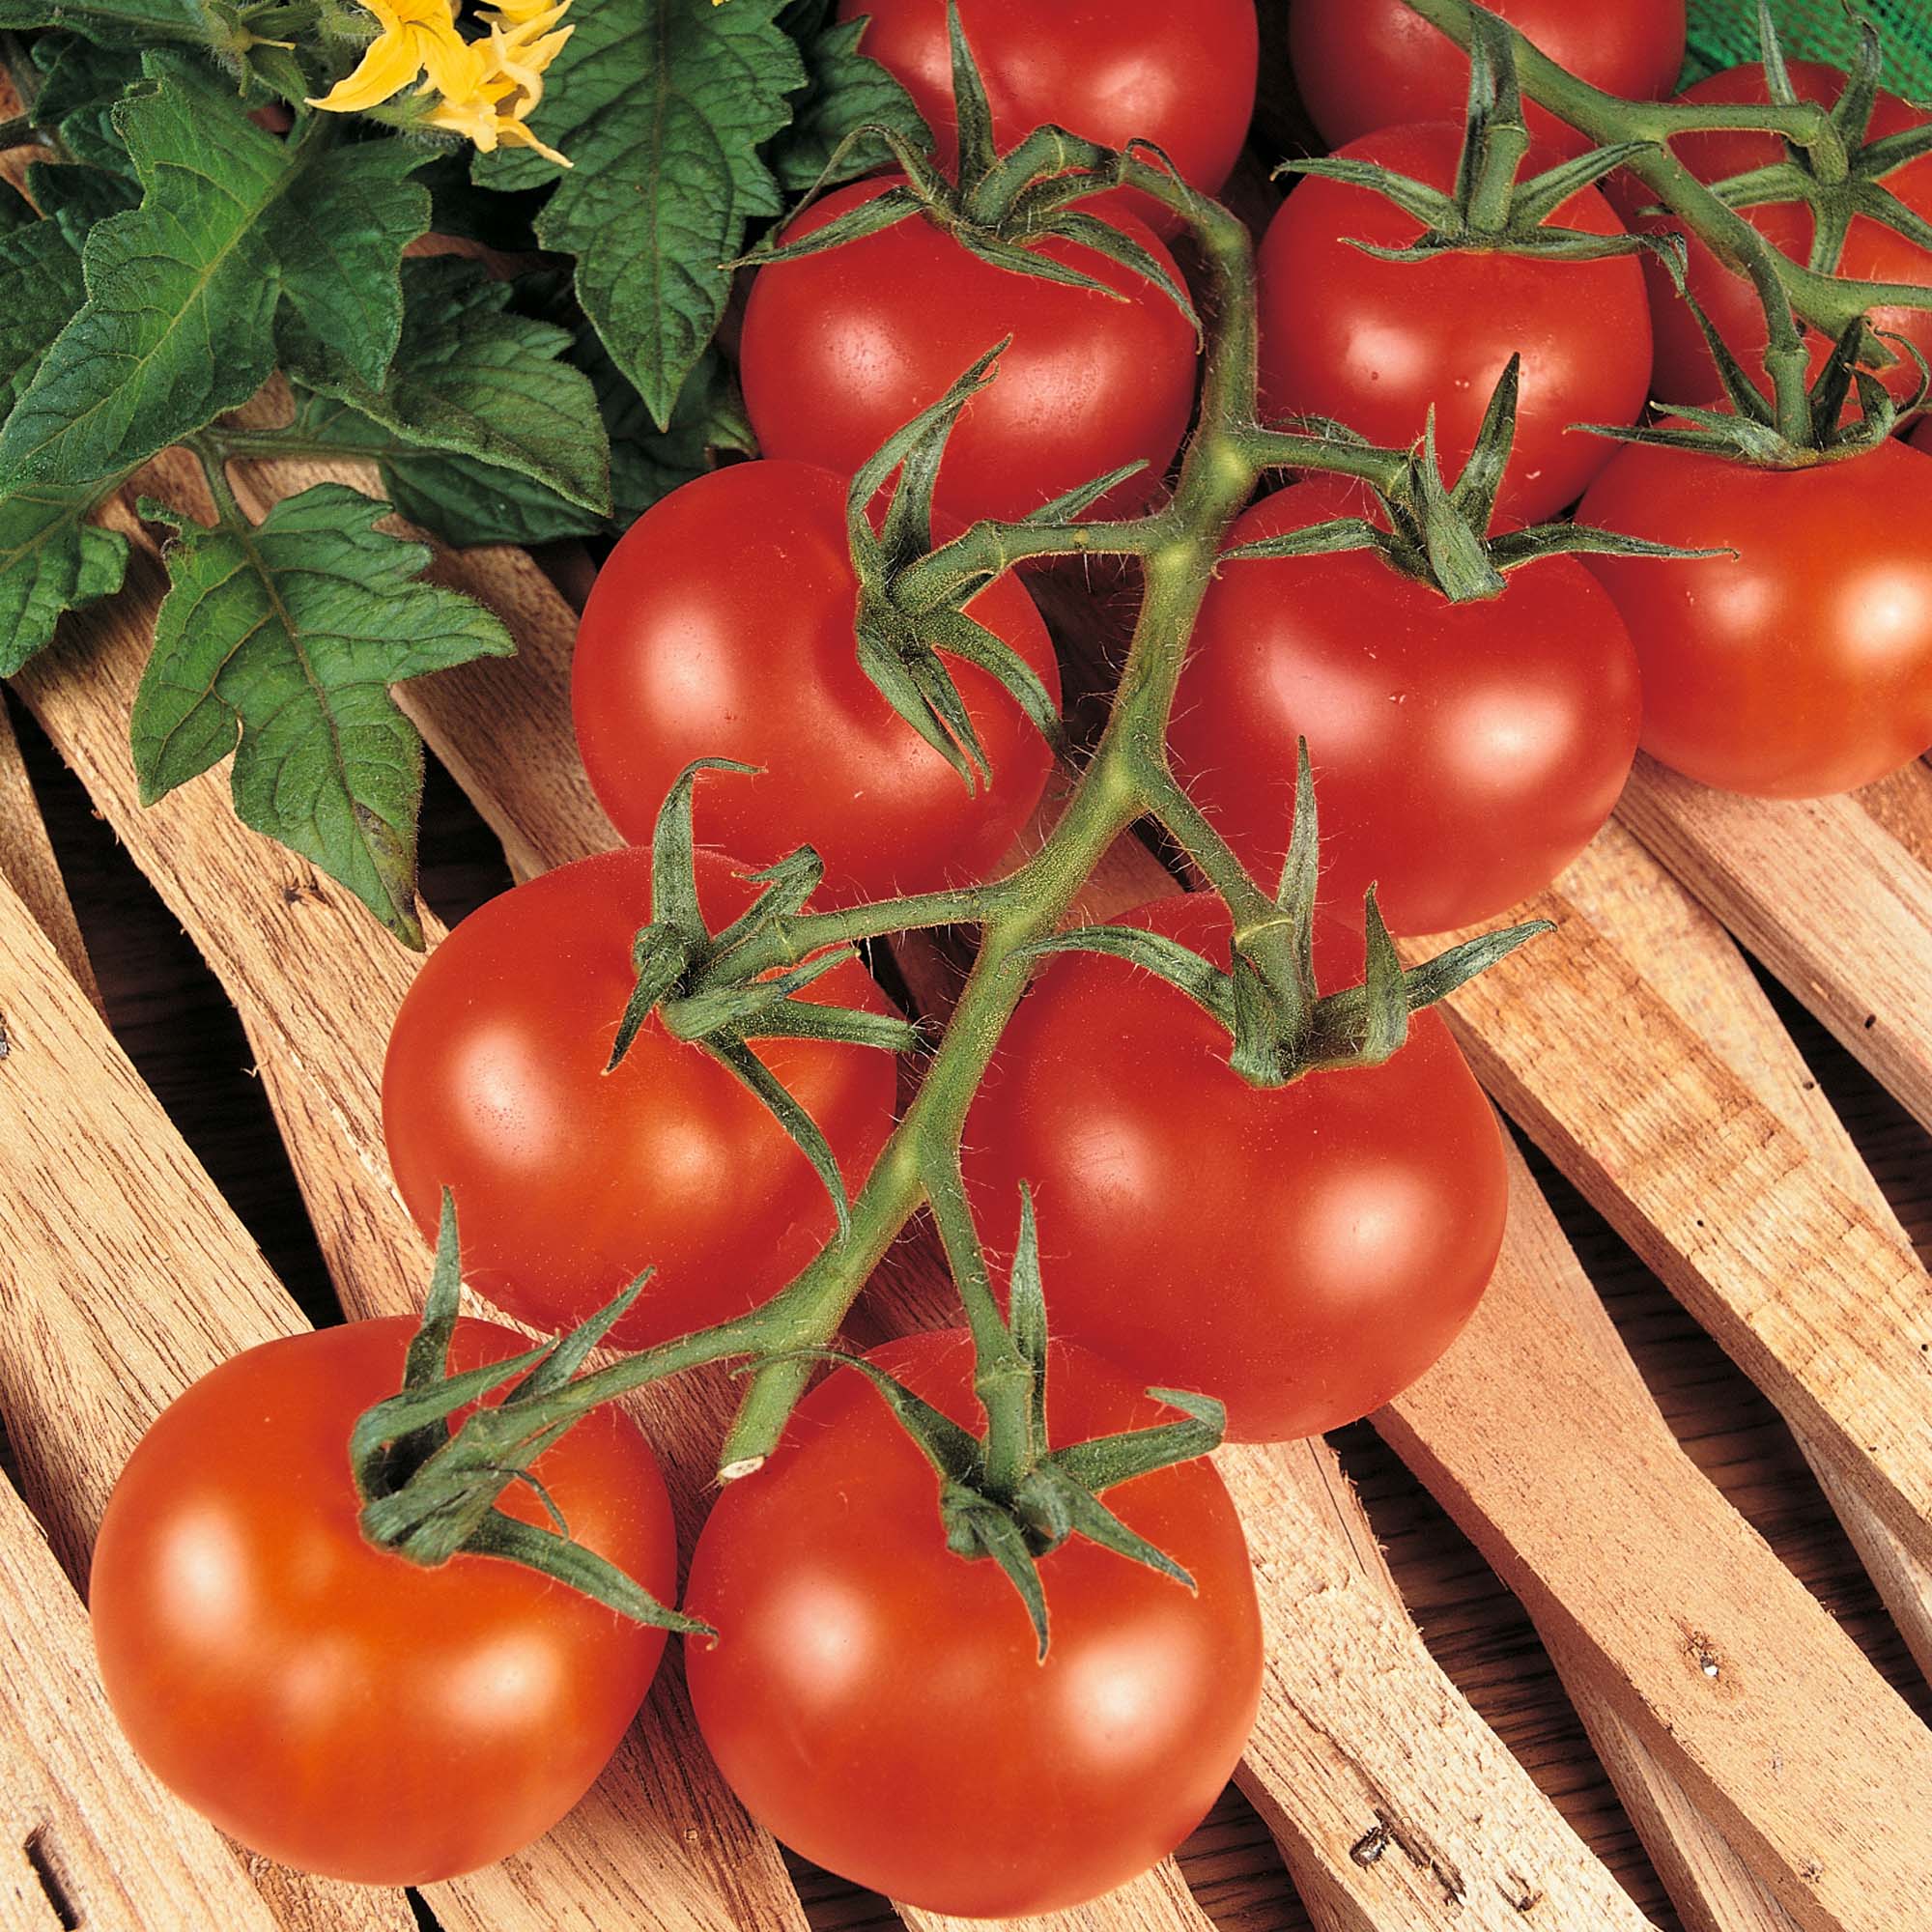 Томат "президент 2 f1": описание и характеристики сорта, рекомендации по выращиванию помидор русский фермер